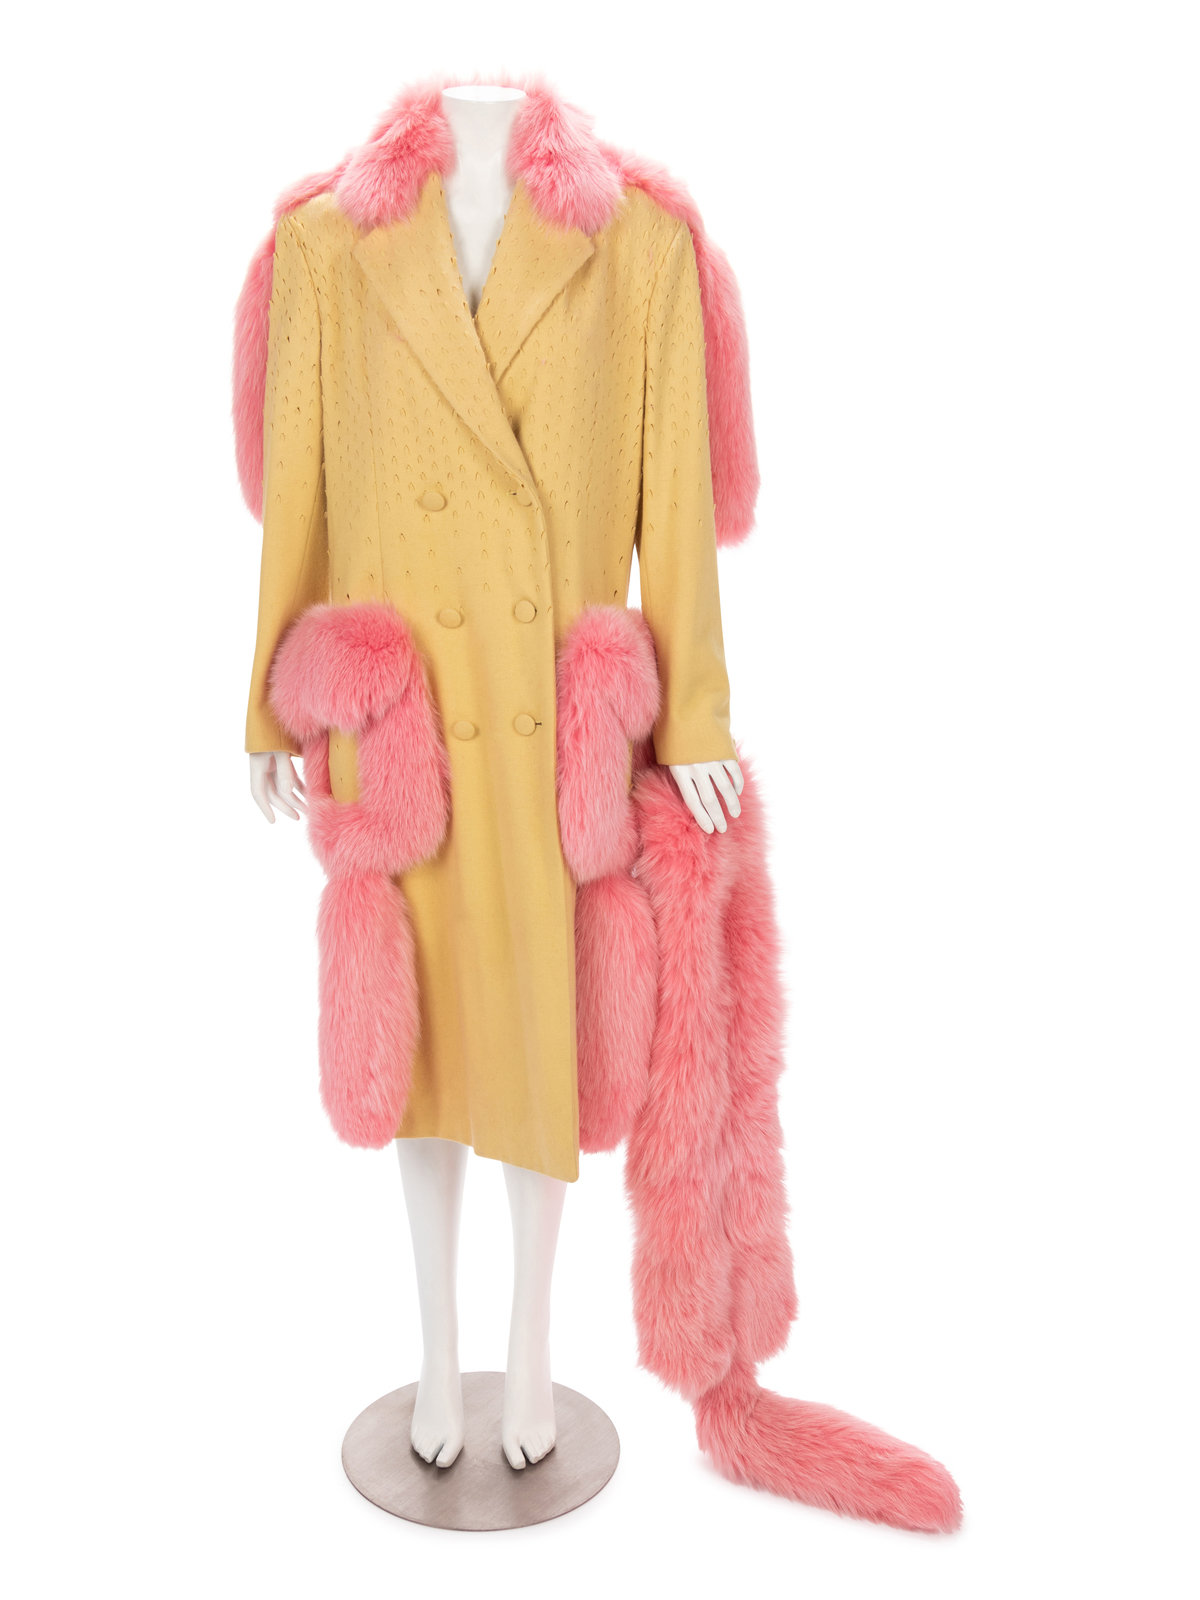 Real Pink Fur Coat 